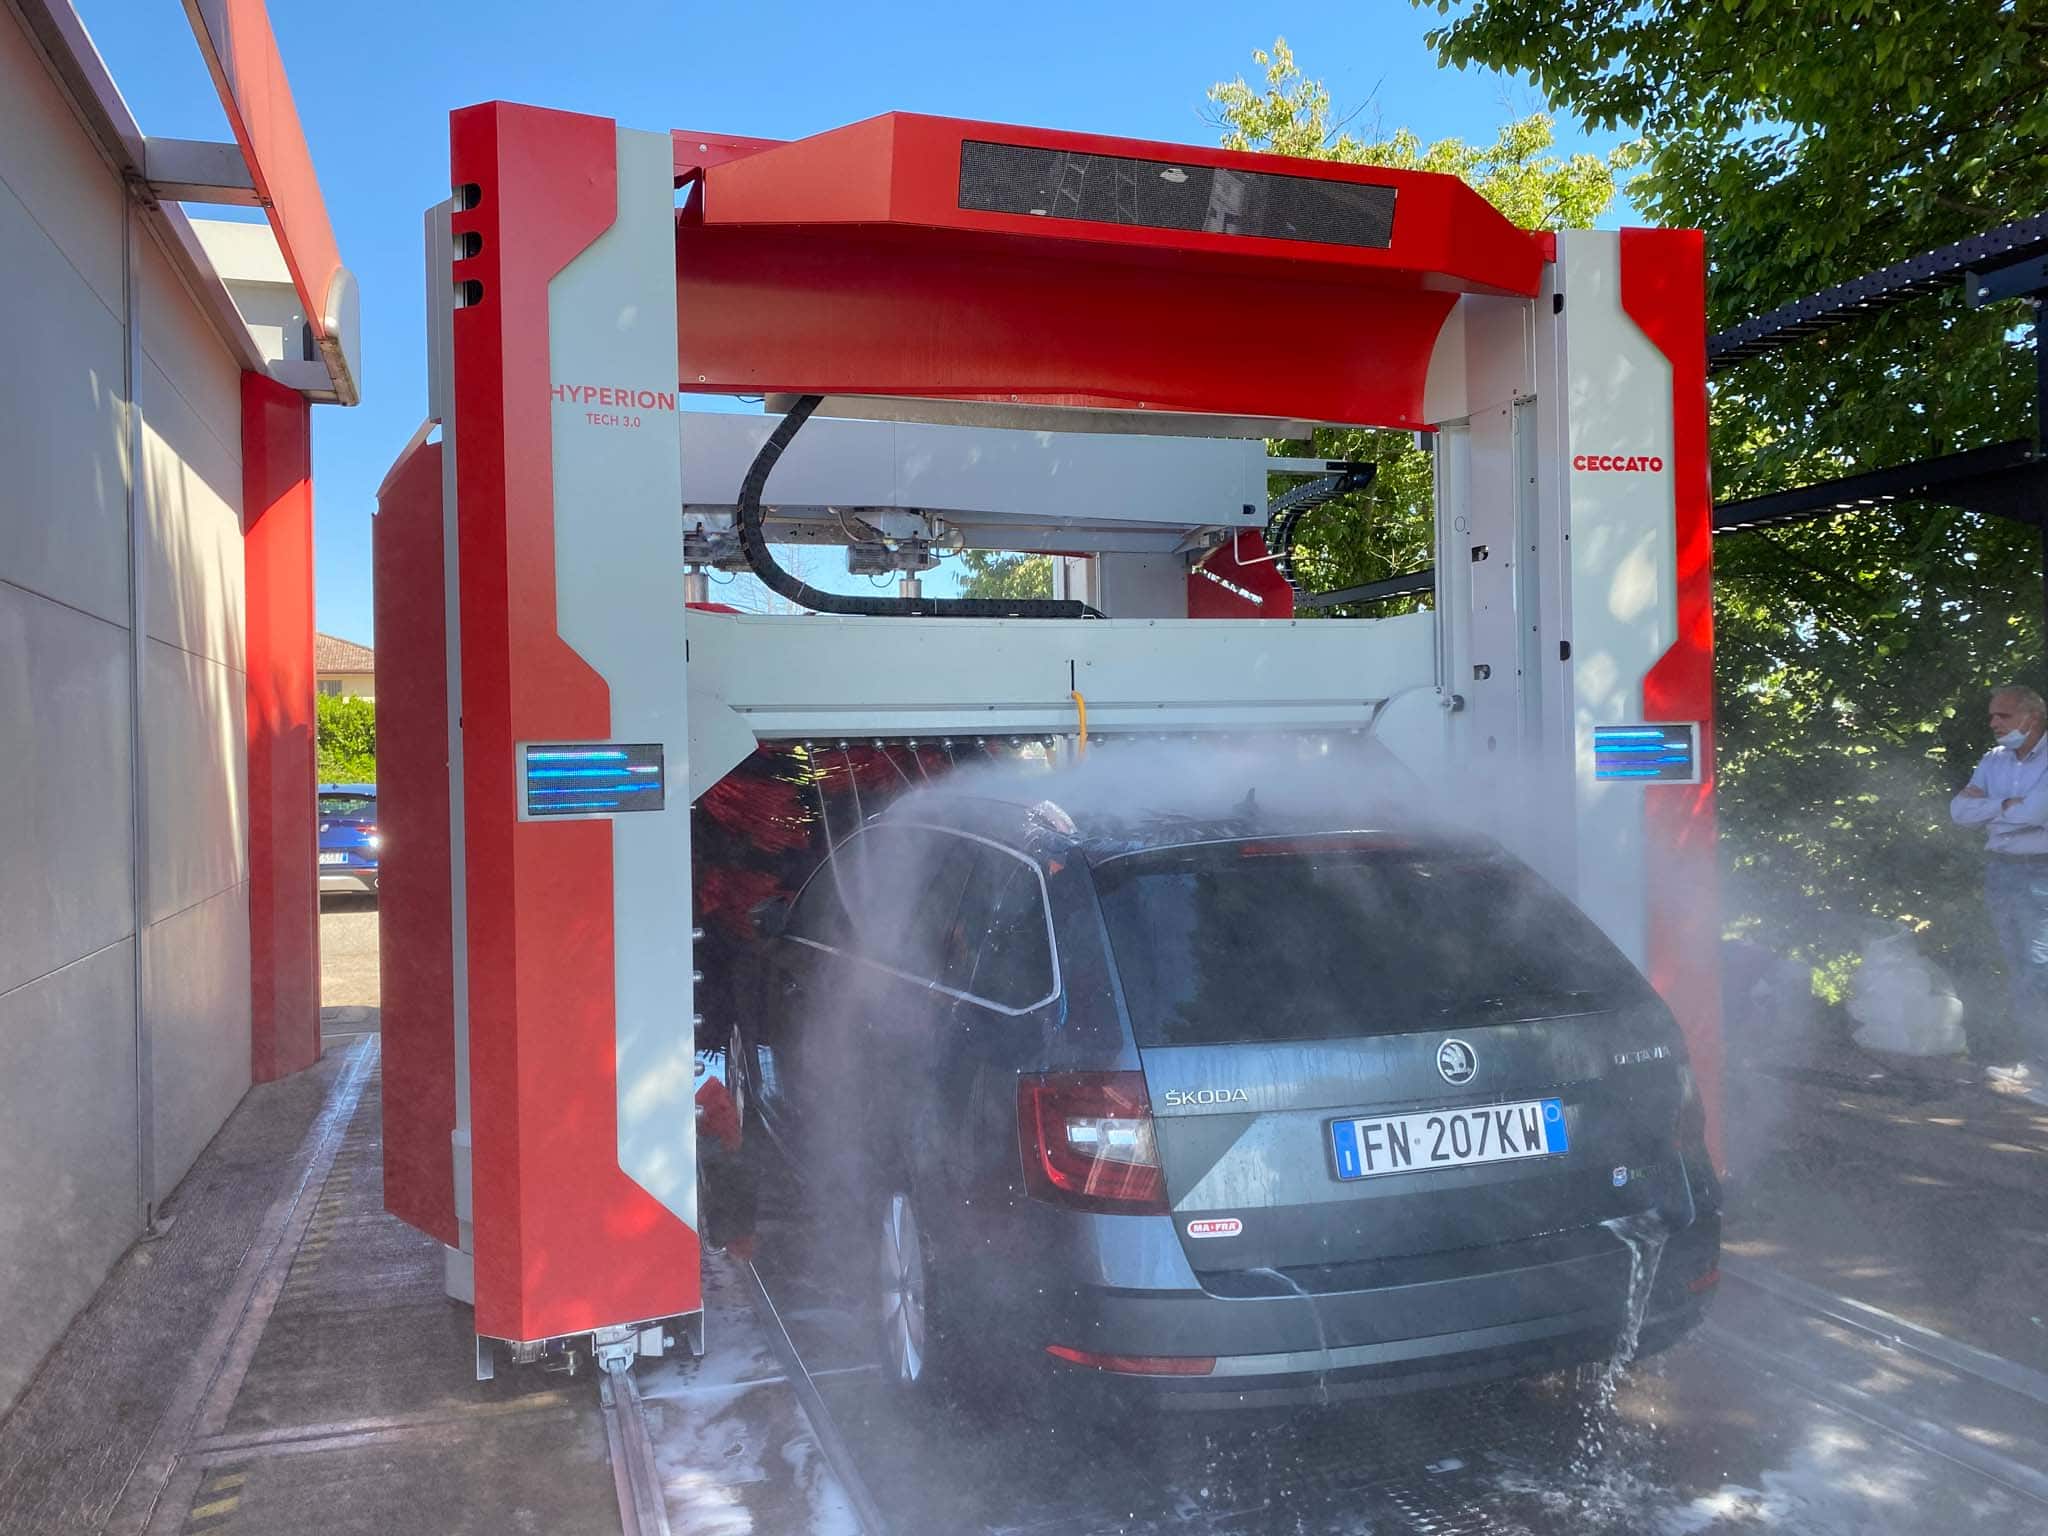 Station de lavage auto : comment ça marche ?